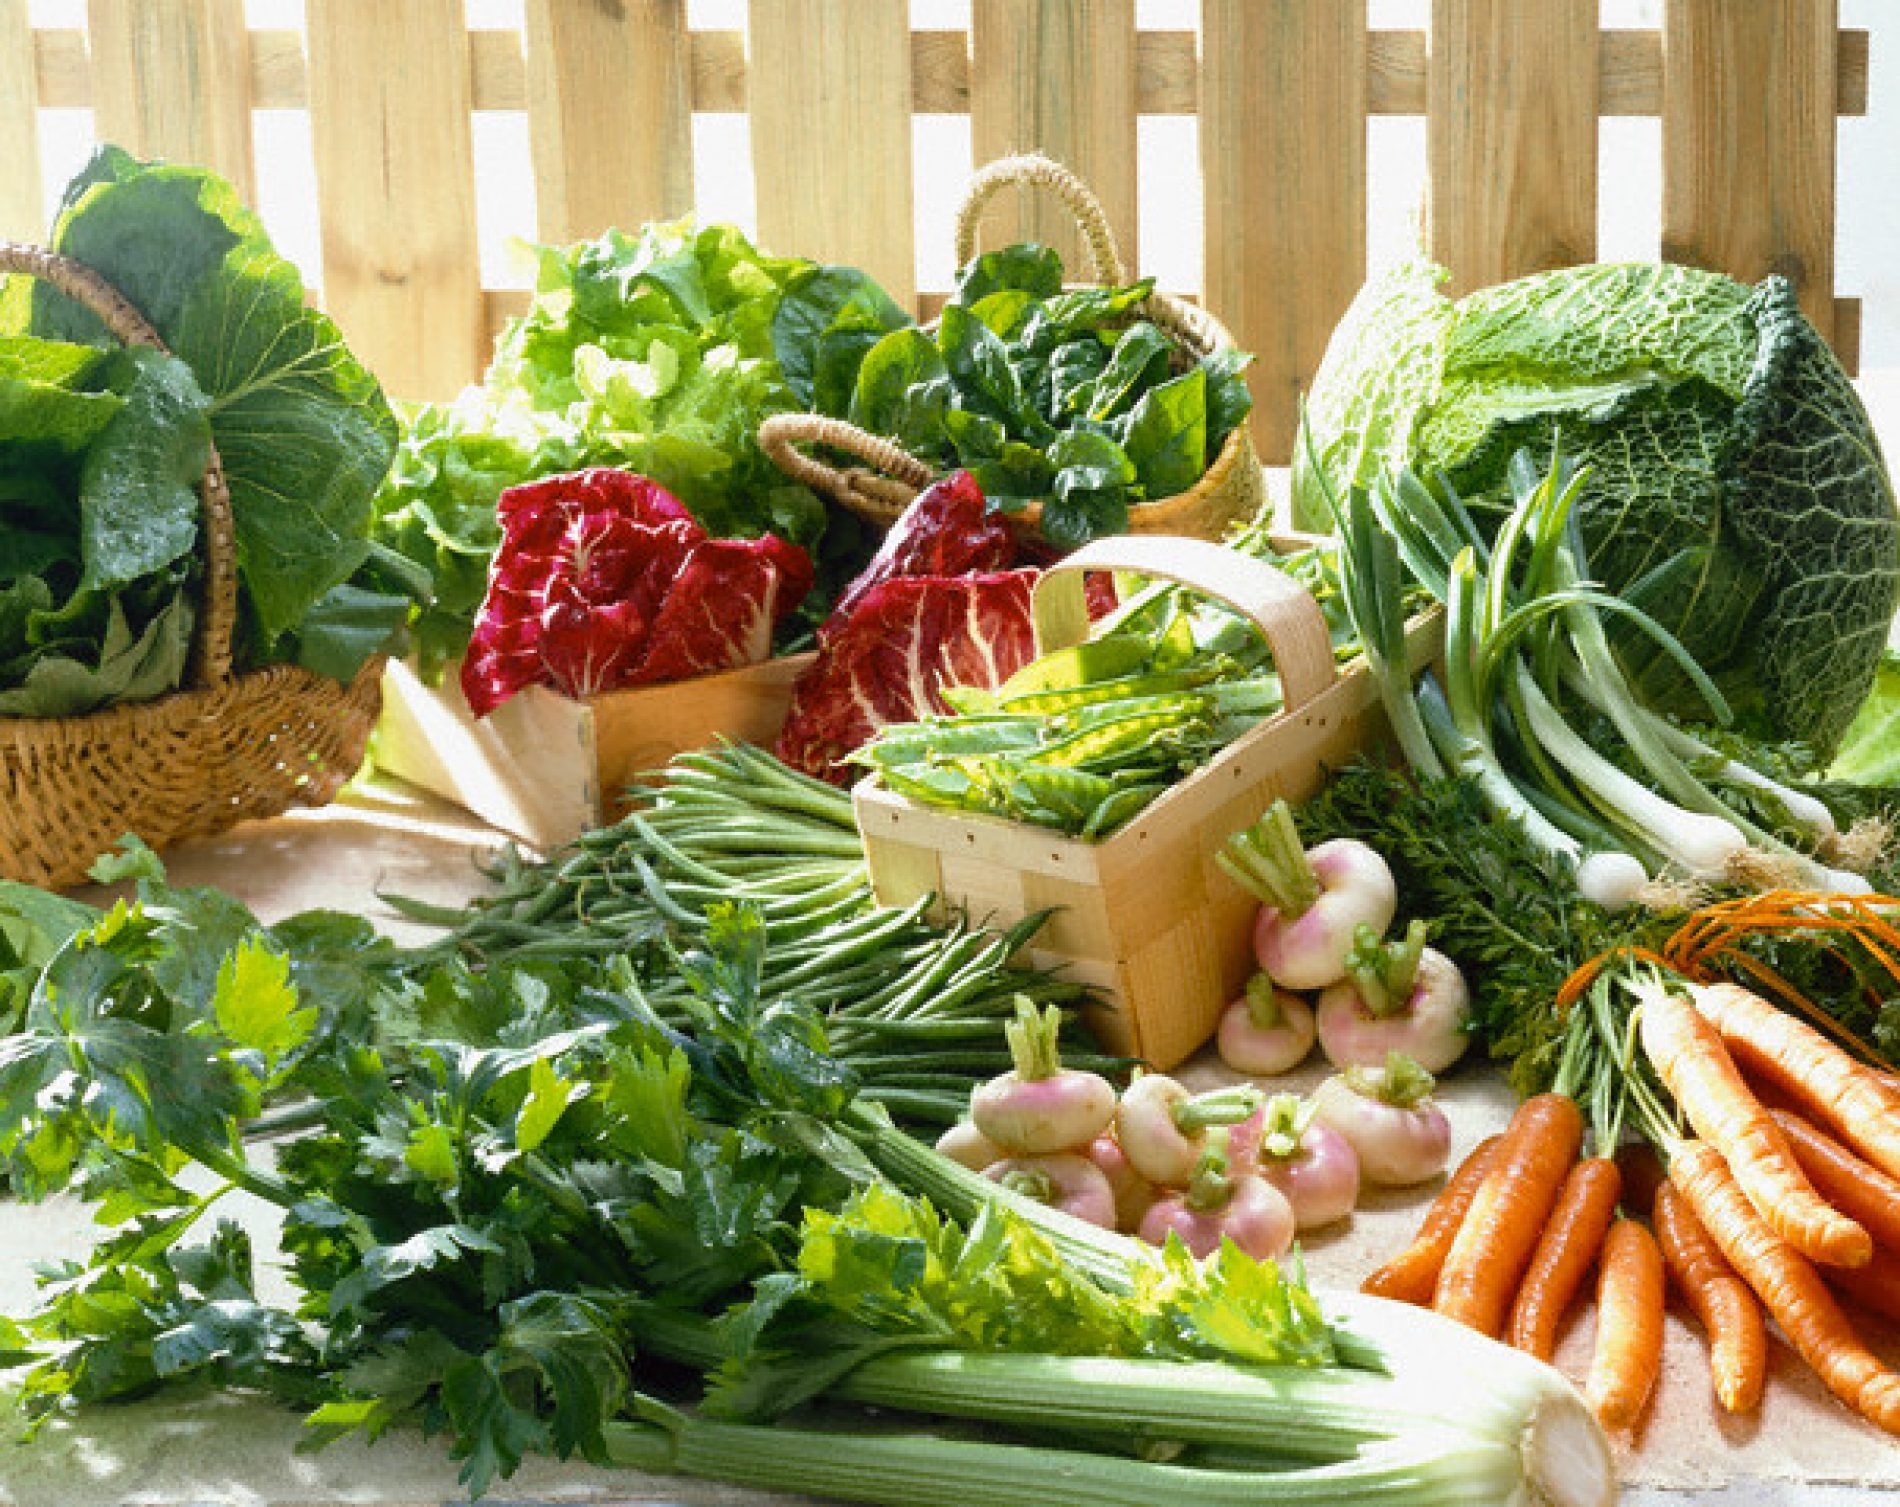   Ăn nhiều rau xanh và kiểm tra sức khỏe định kỳ để giảm nguy cơ mắc ung thư tuyến giáp  